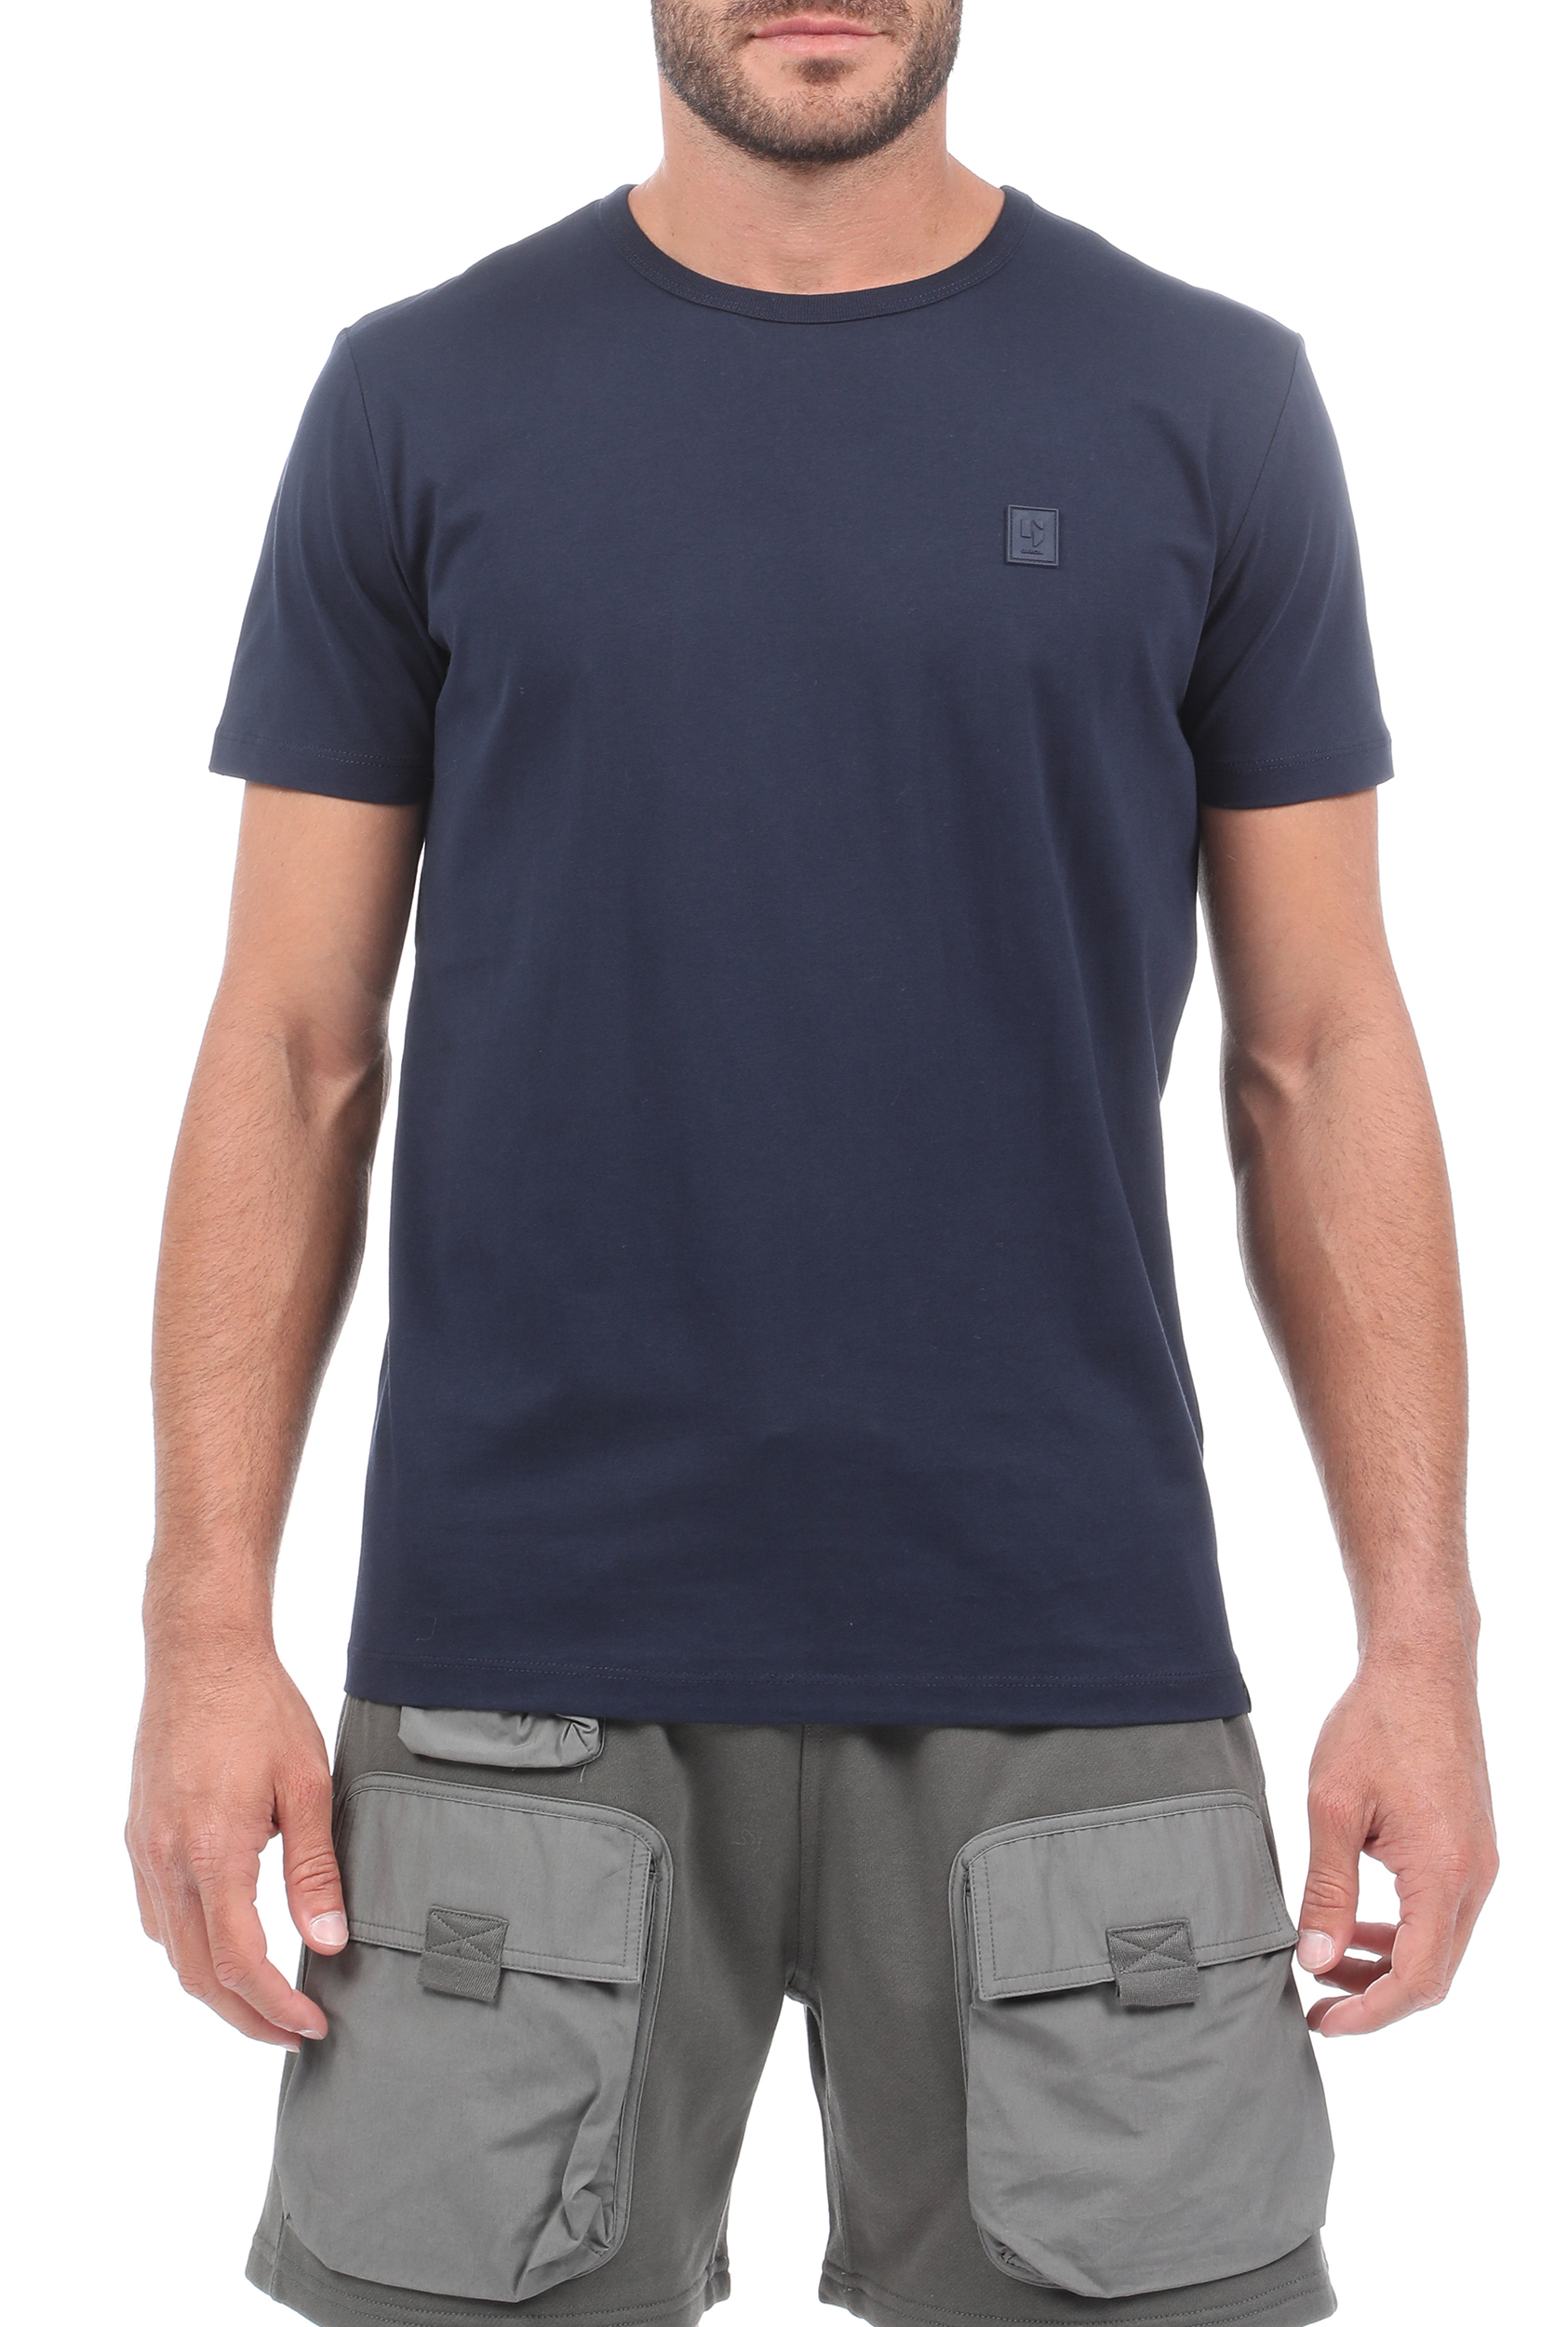 Ανδρικά/Ρούχα/Μπλούζες/Κοντομάνικες GARCIA JEANS - Ανδρικό t-shirt GARCIA JEANS μπλε